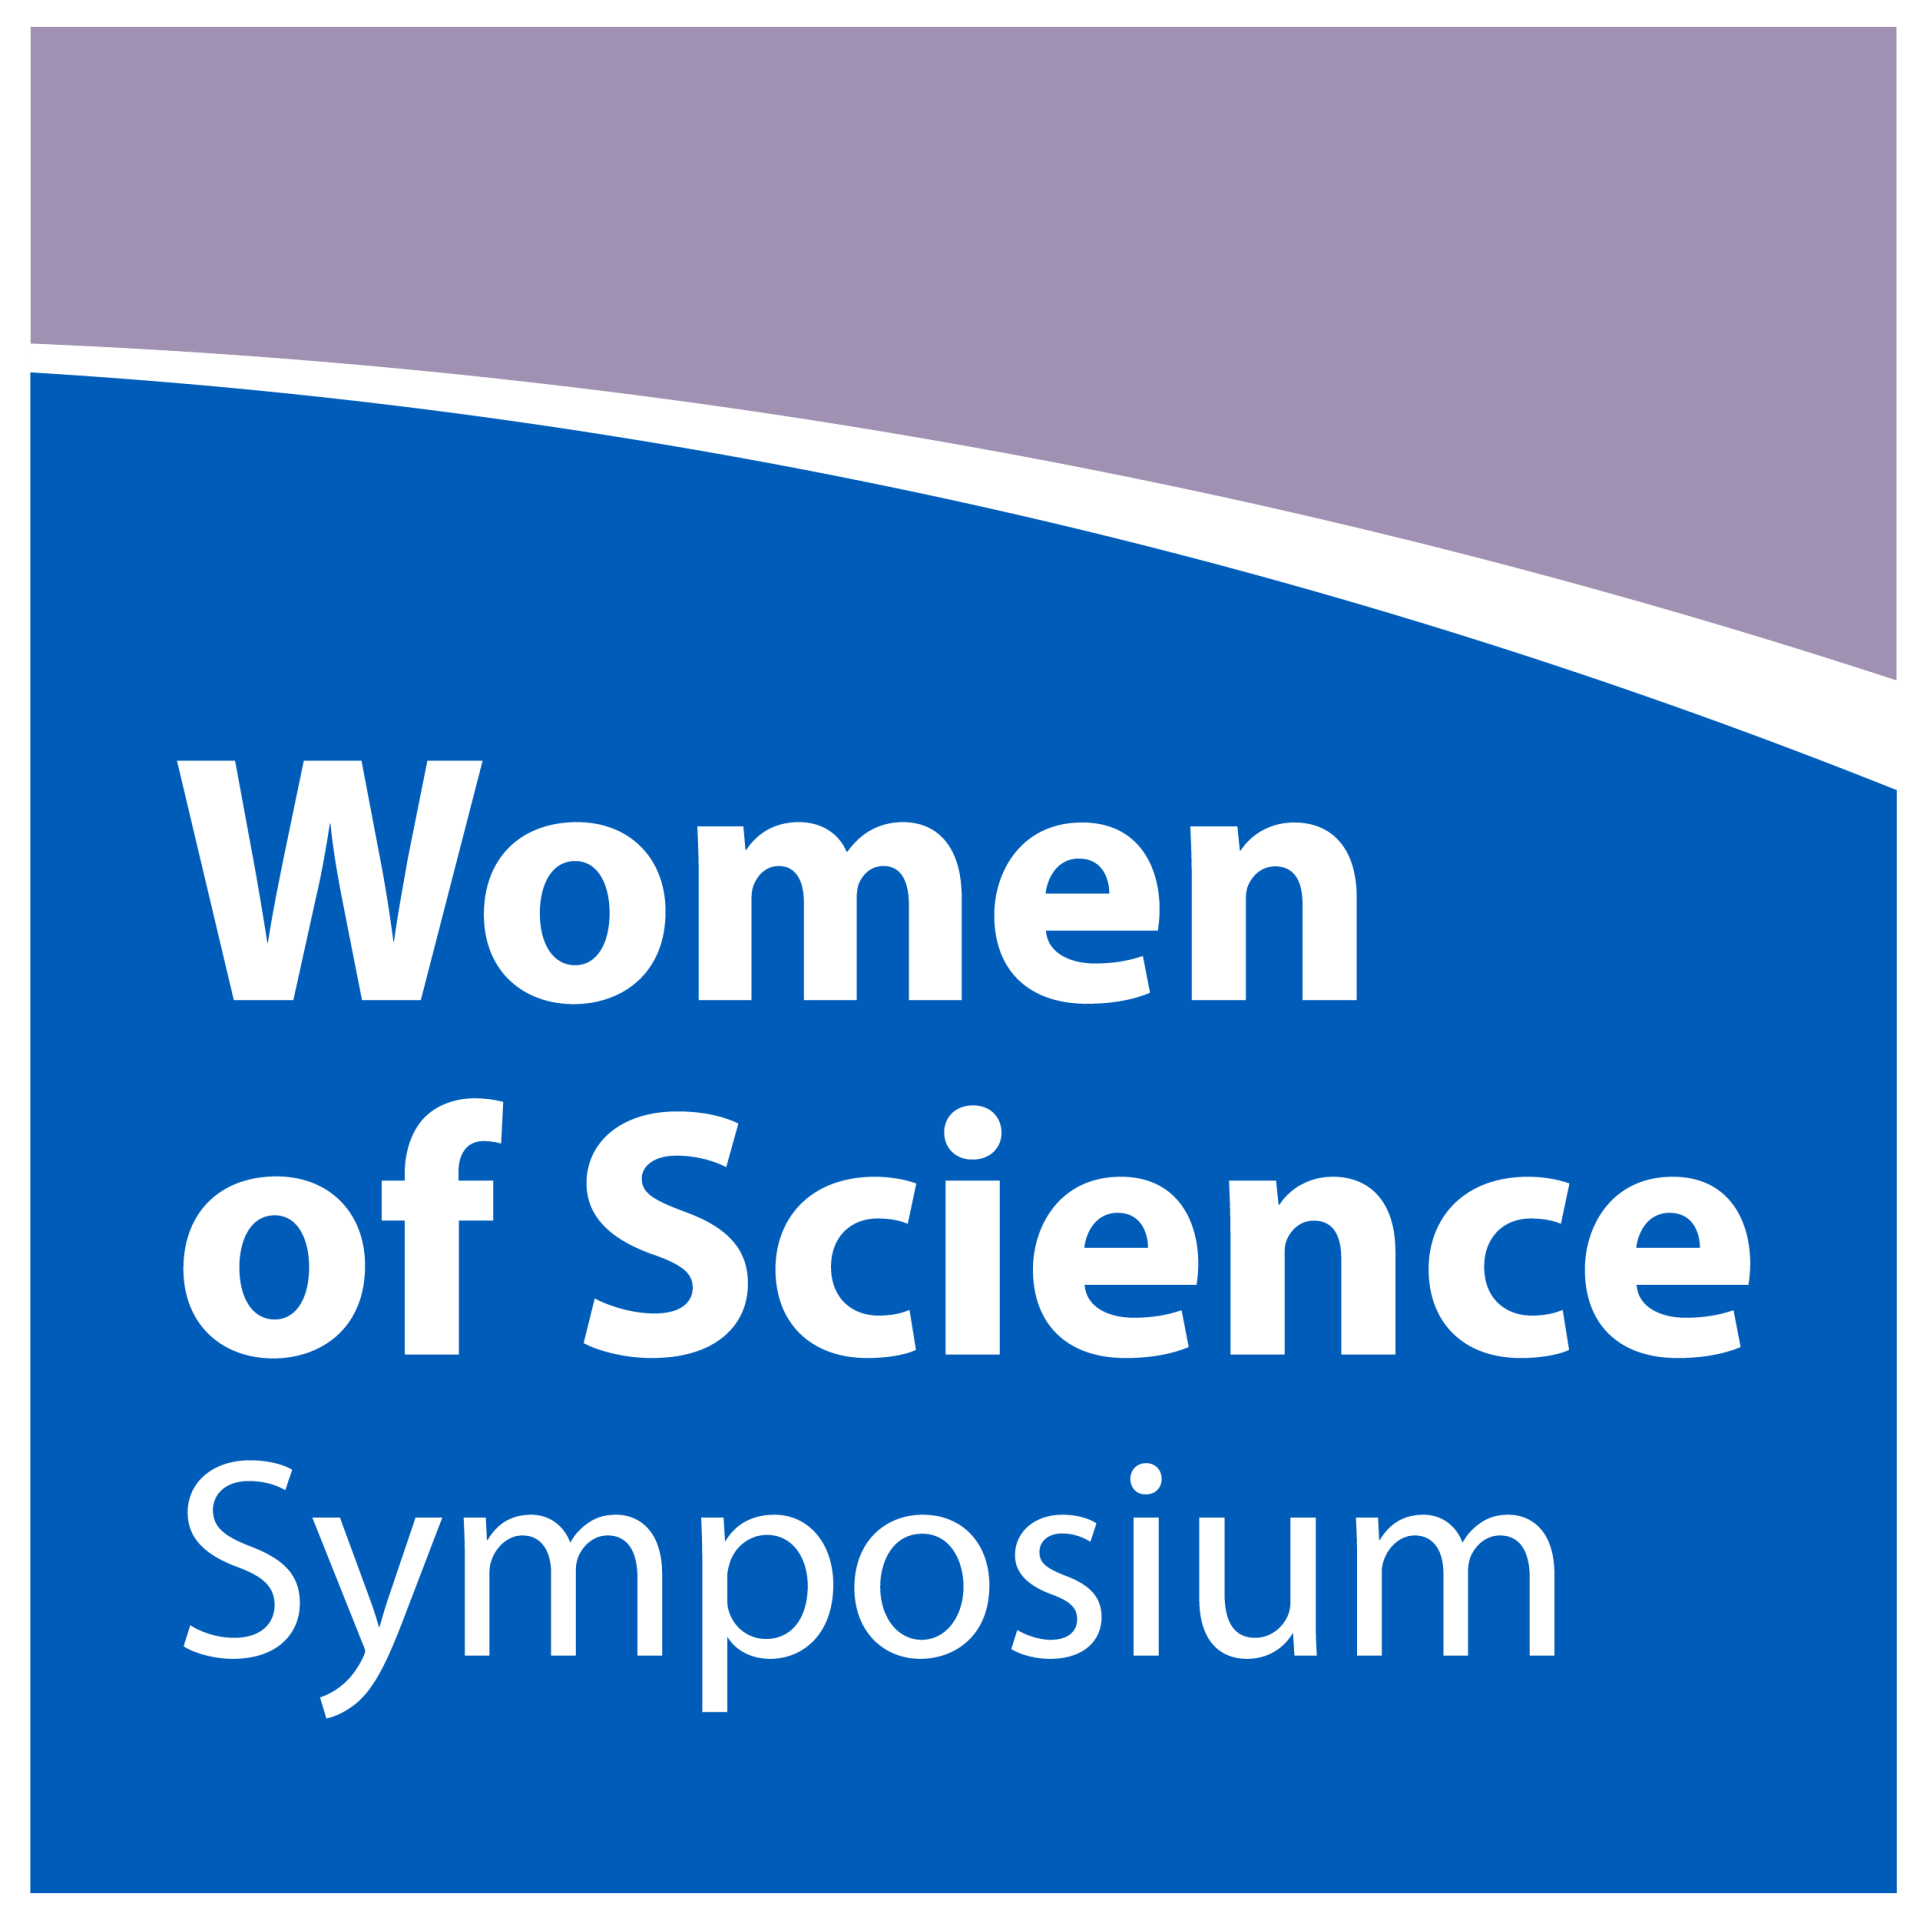 Women of Science Symposium Square Logo